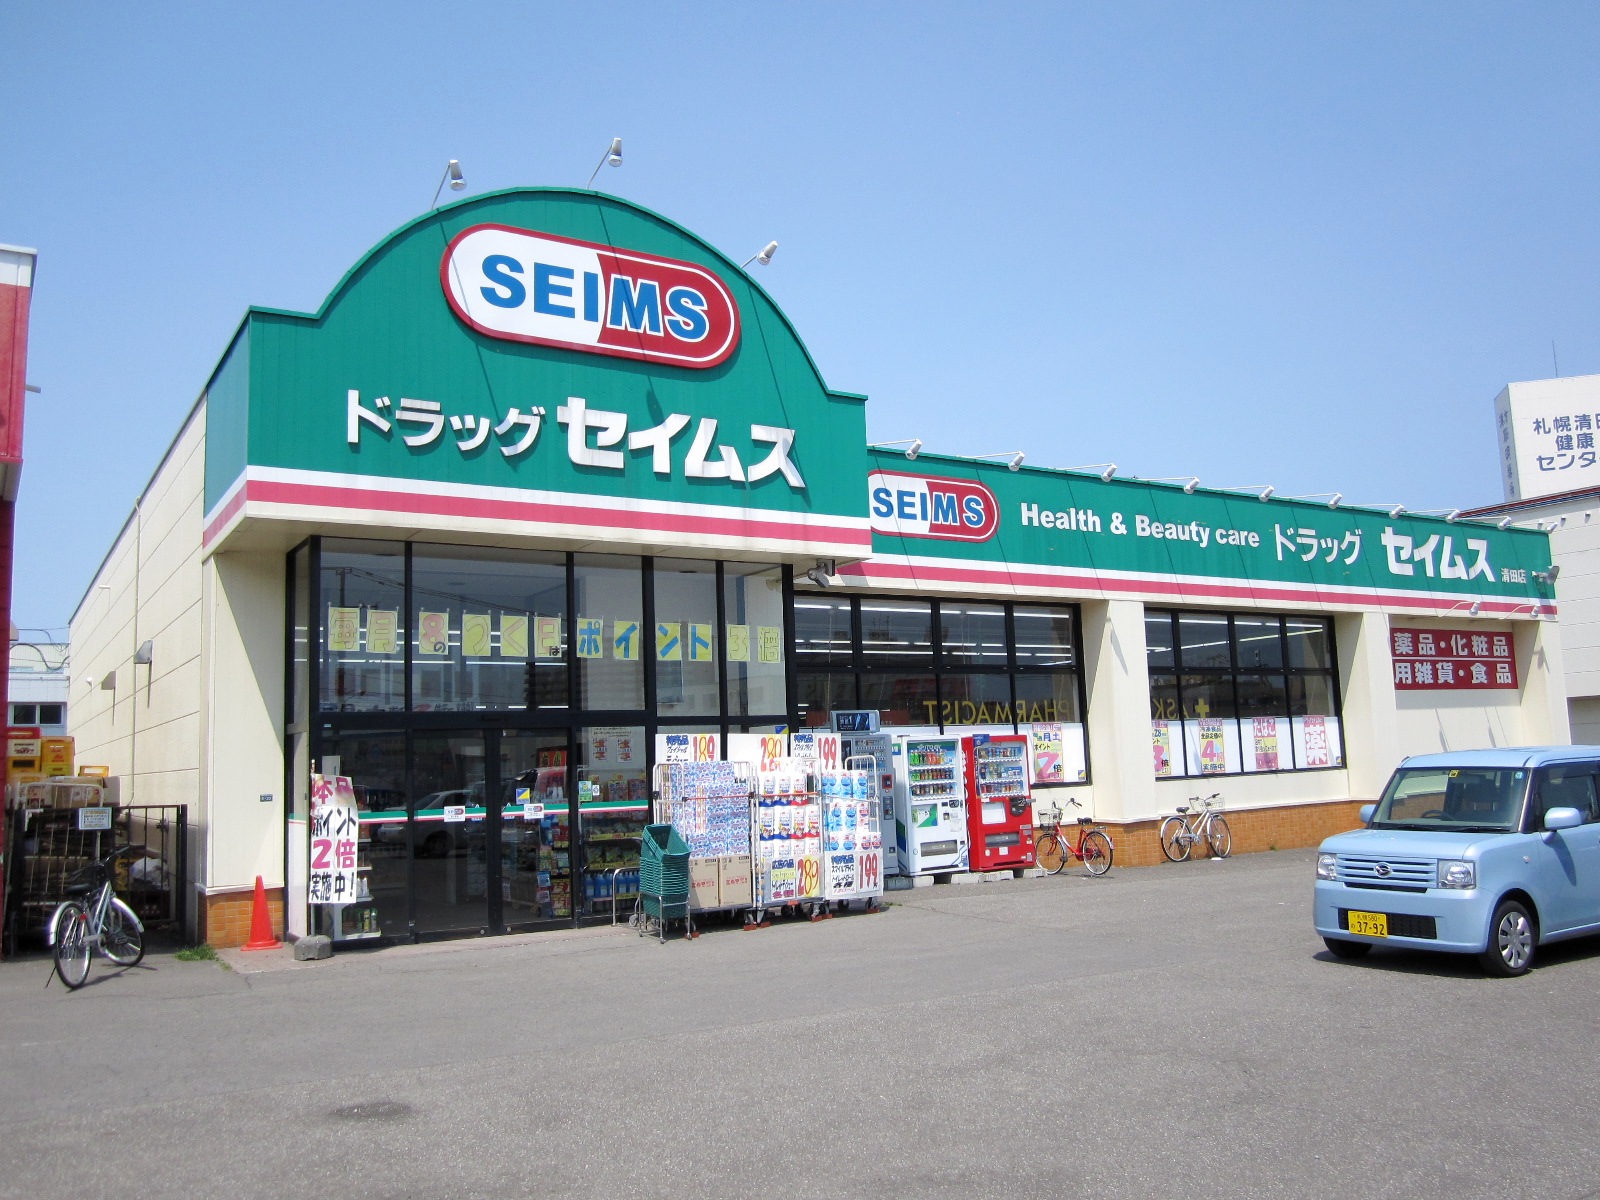 Dorakkusutoa. Drag Seimusu Kiyota store 914m to (drugstore)